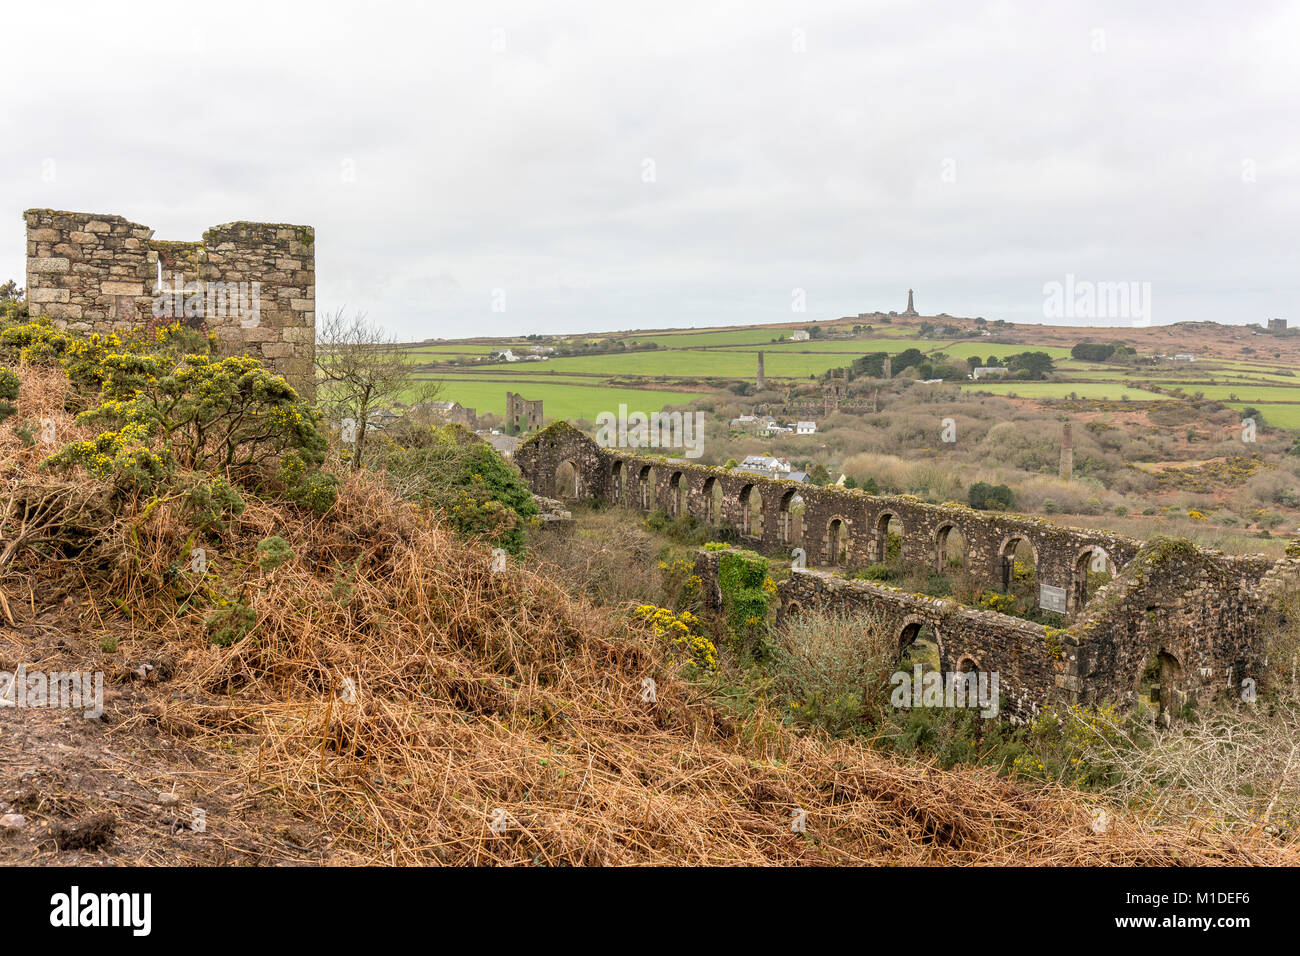 Le Basset des mines, l'engine house - shed qui abritait autrefois le Cornish stamps pour le broyage et la distinction entre les minerais d'étain Banque D'Images